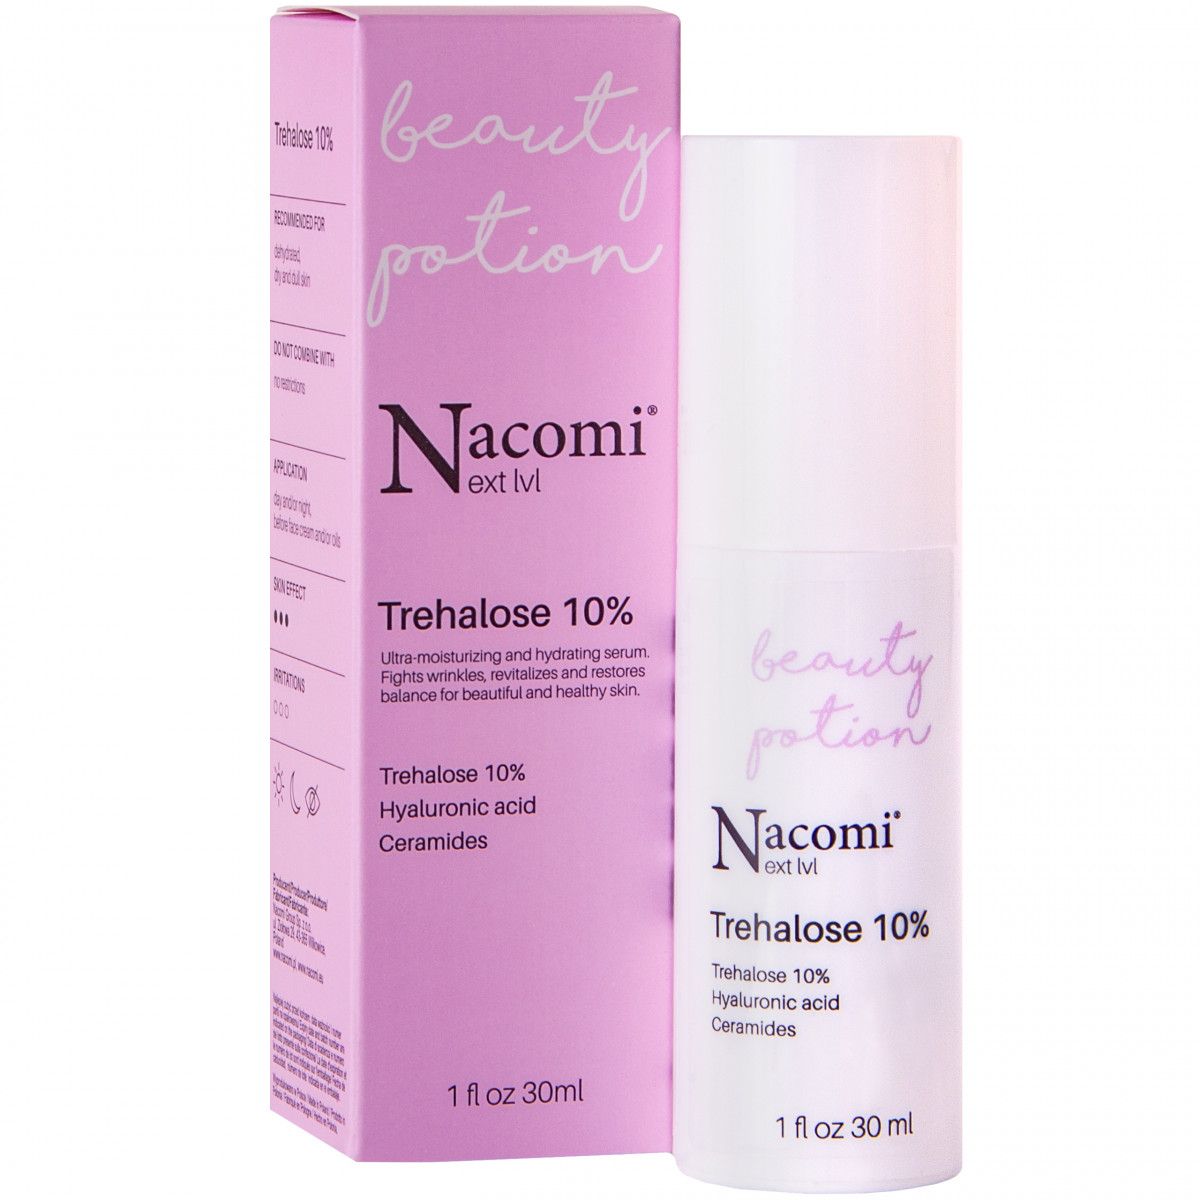 Nacomi Next Level Trehalose 10% - serum intensywnie nawilżające Nacomi - 1